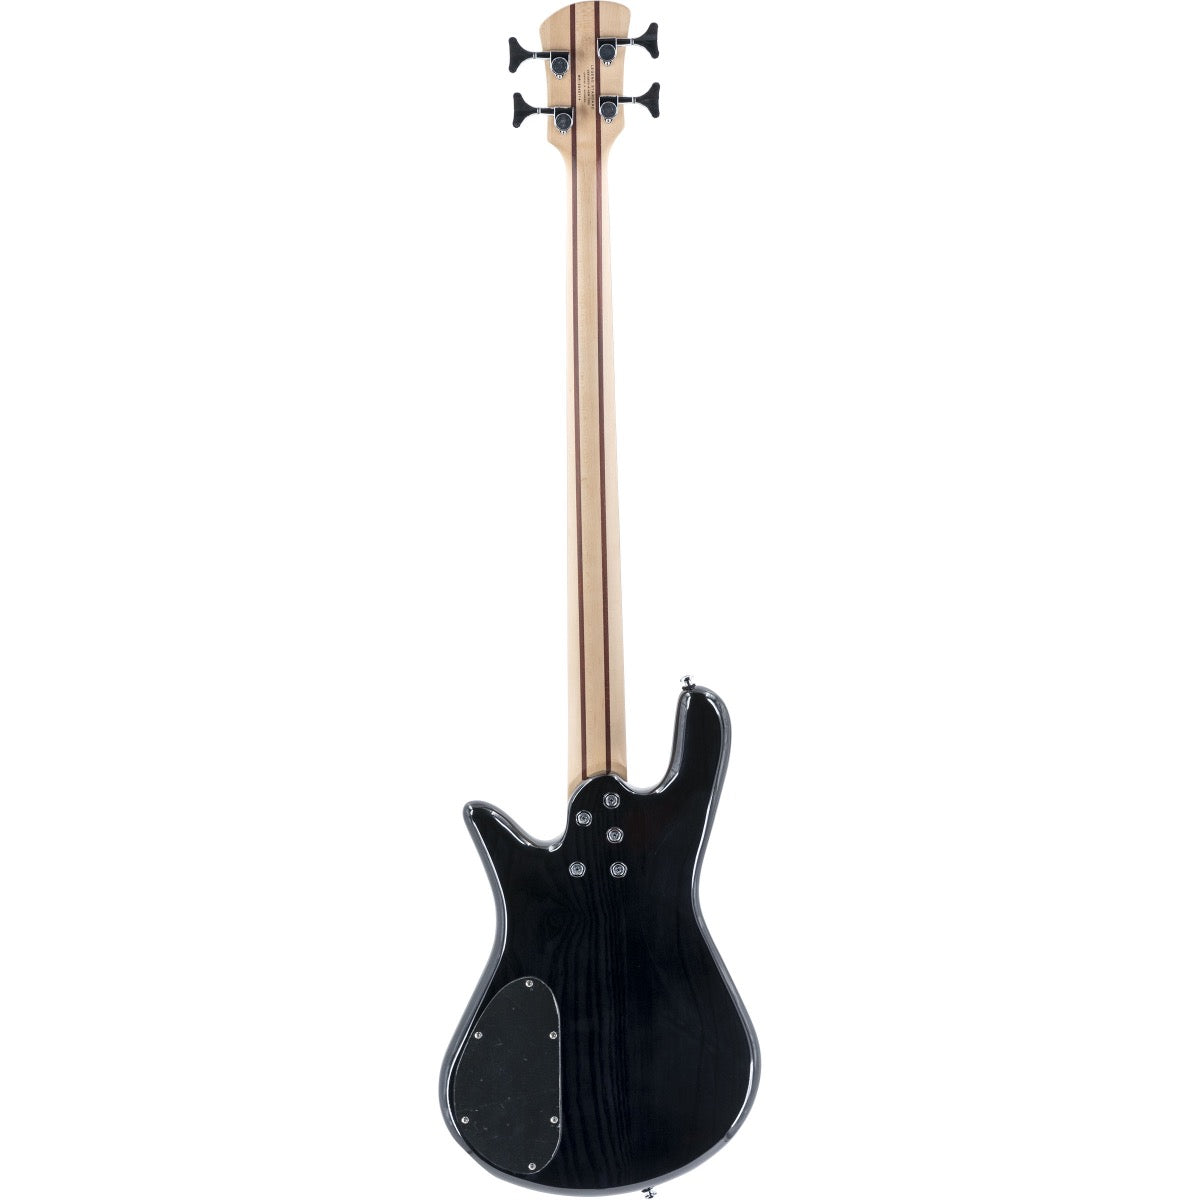 Spector Legend 4 Standard Bass Guitar - Black Stain